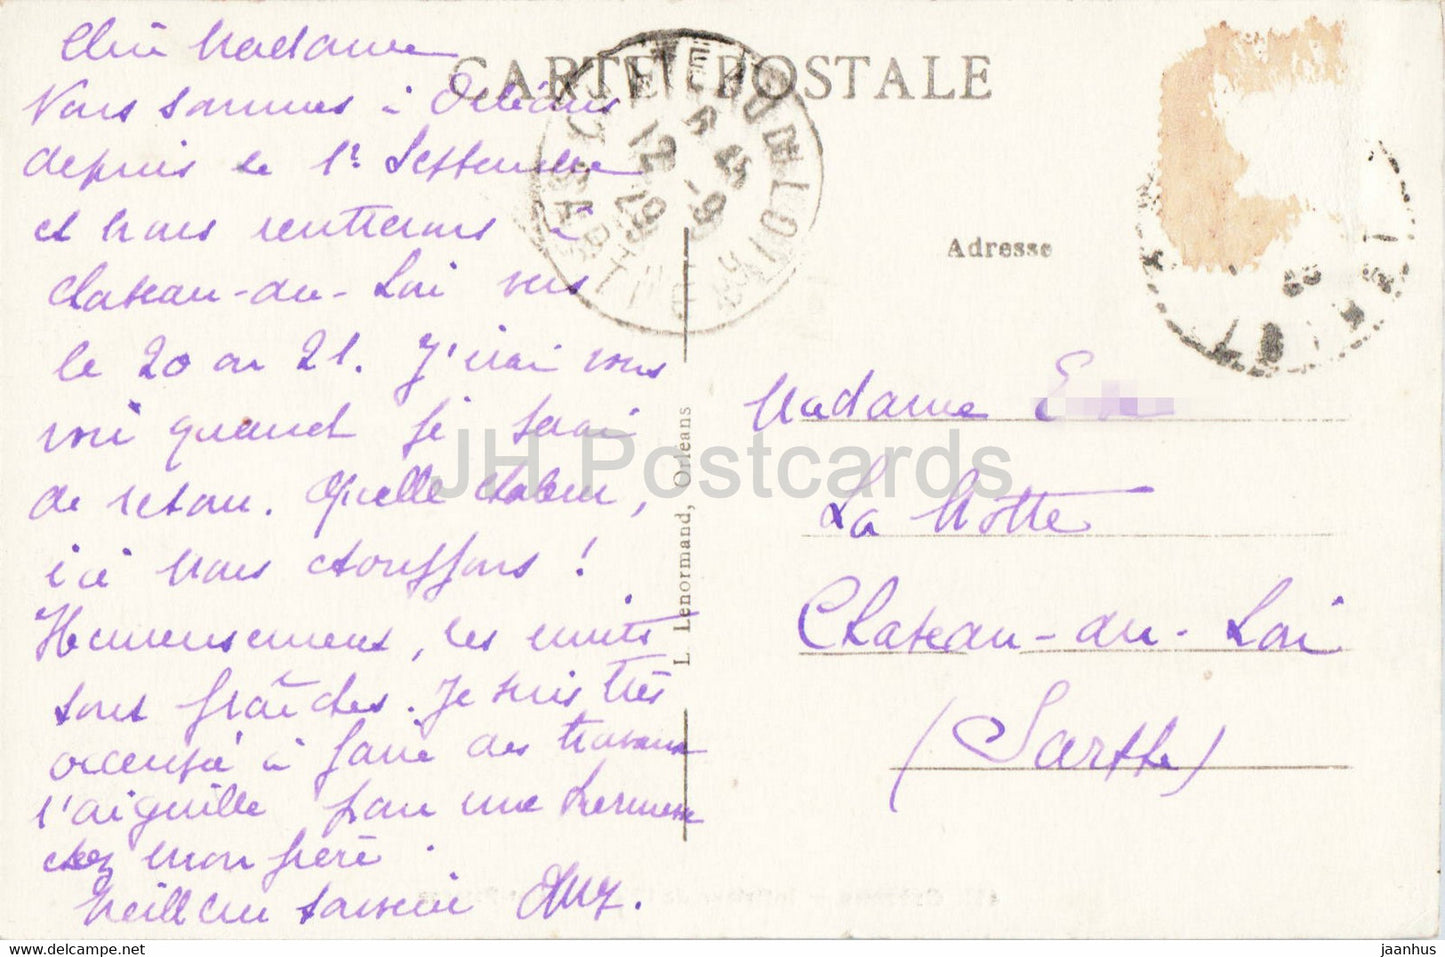 Orleans - Interieur de l'Eglise Saint Paterne - church - 417 - old postcard - 1929 - France - used